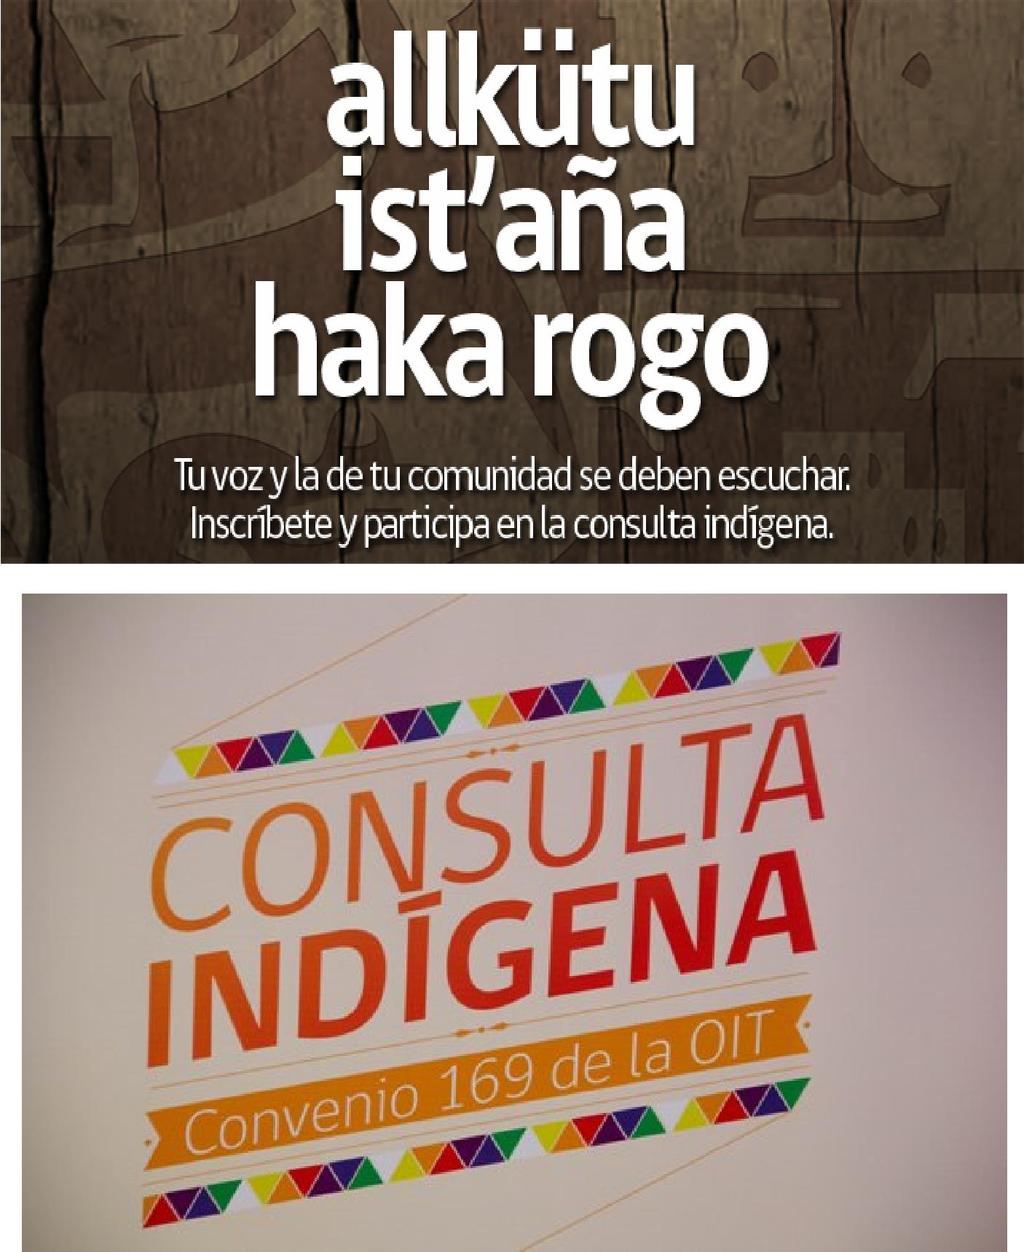 Consulta Institucionalidad Indígena 2011 En marzo 2011 el Gobierno comenzó la Consulta sobre Institucionalidad Indígena para abordar tres grandes áreas temáticas: Nueva Normativa General de Consulta